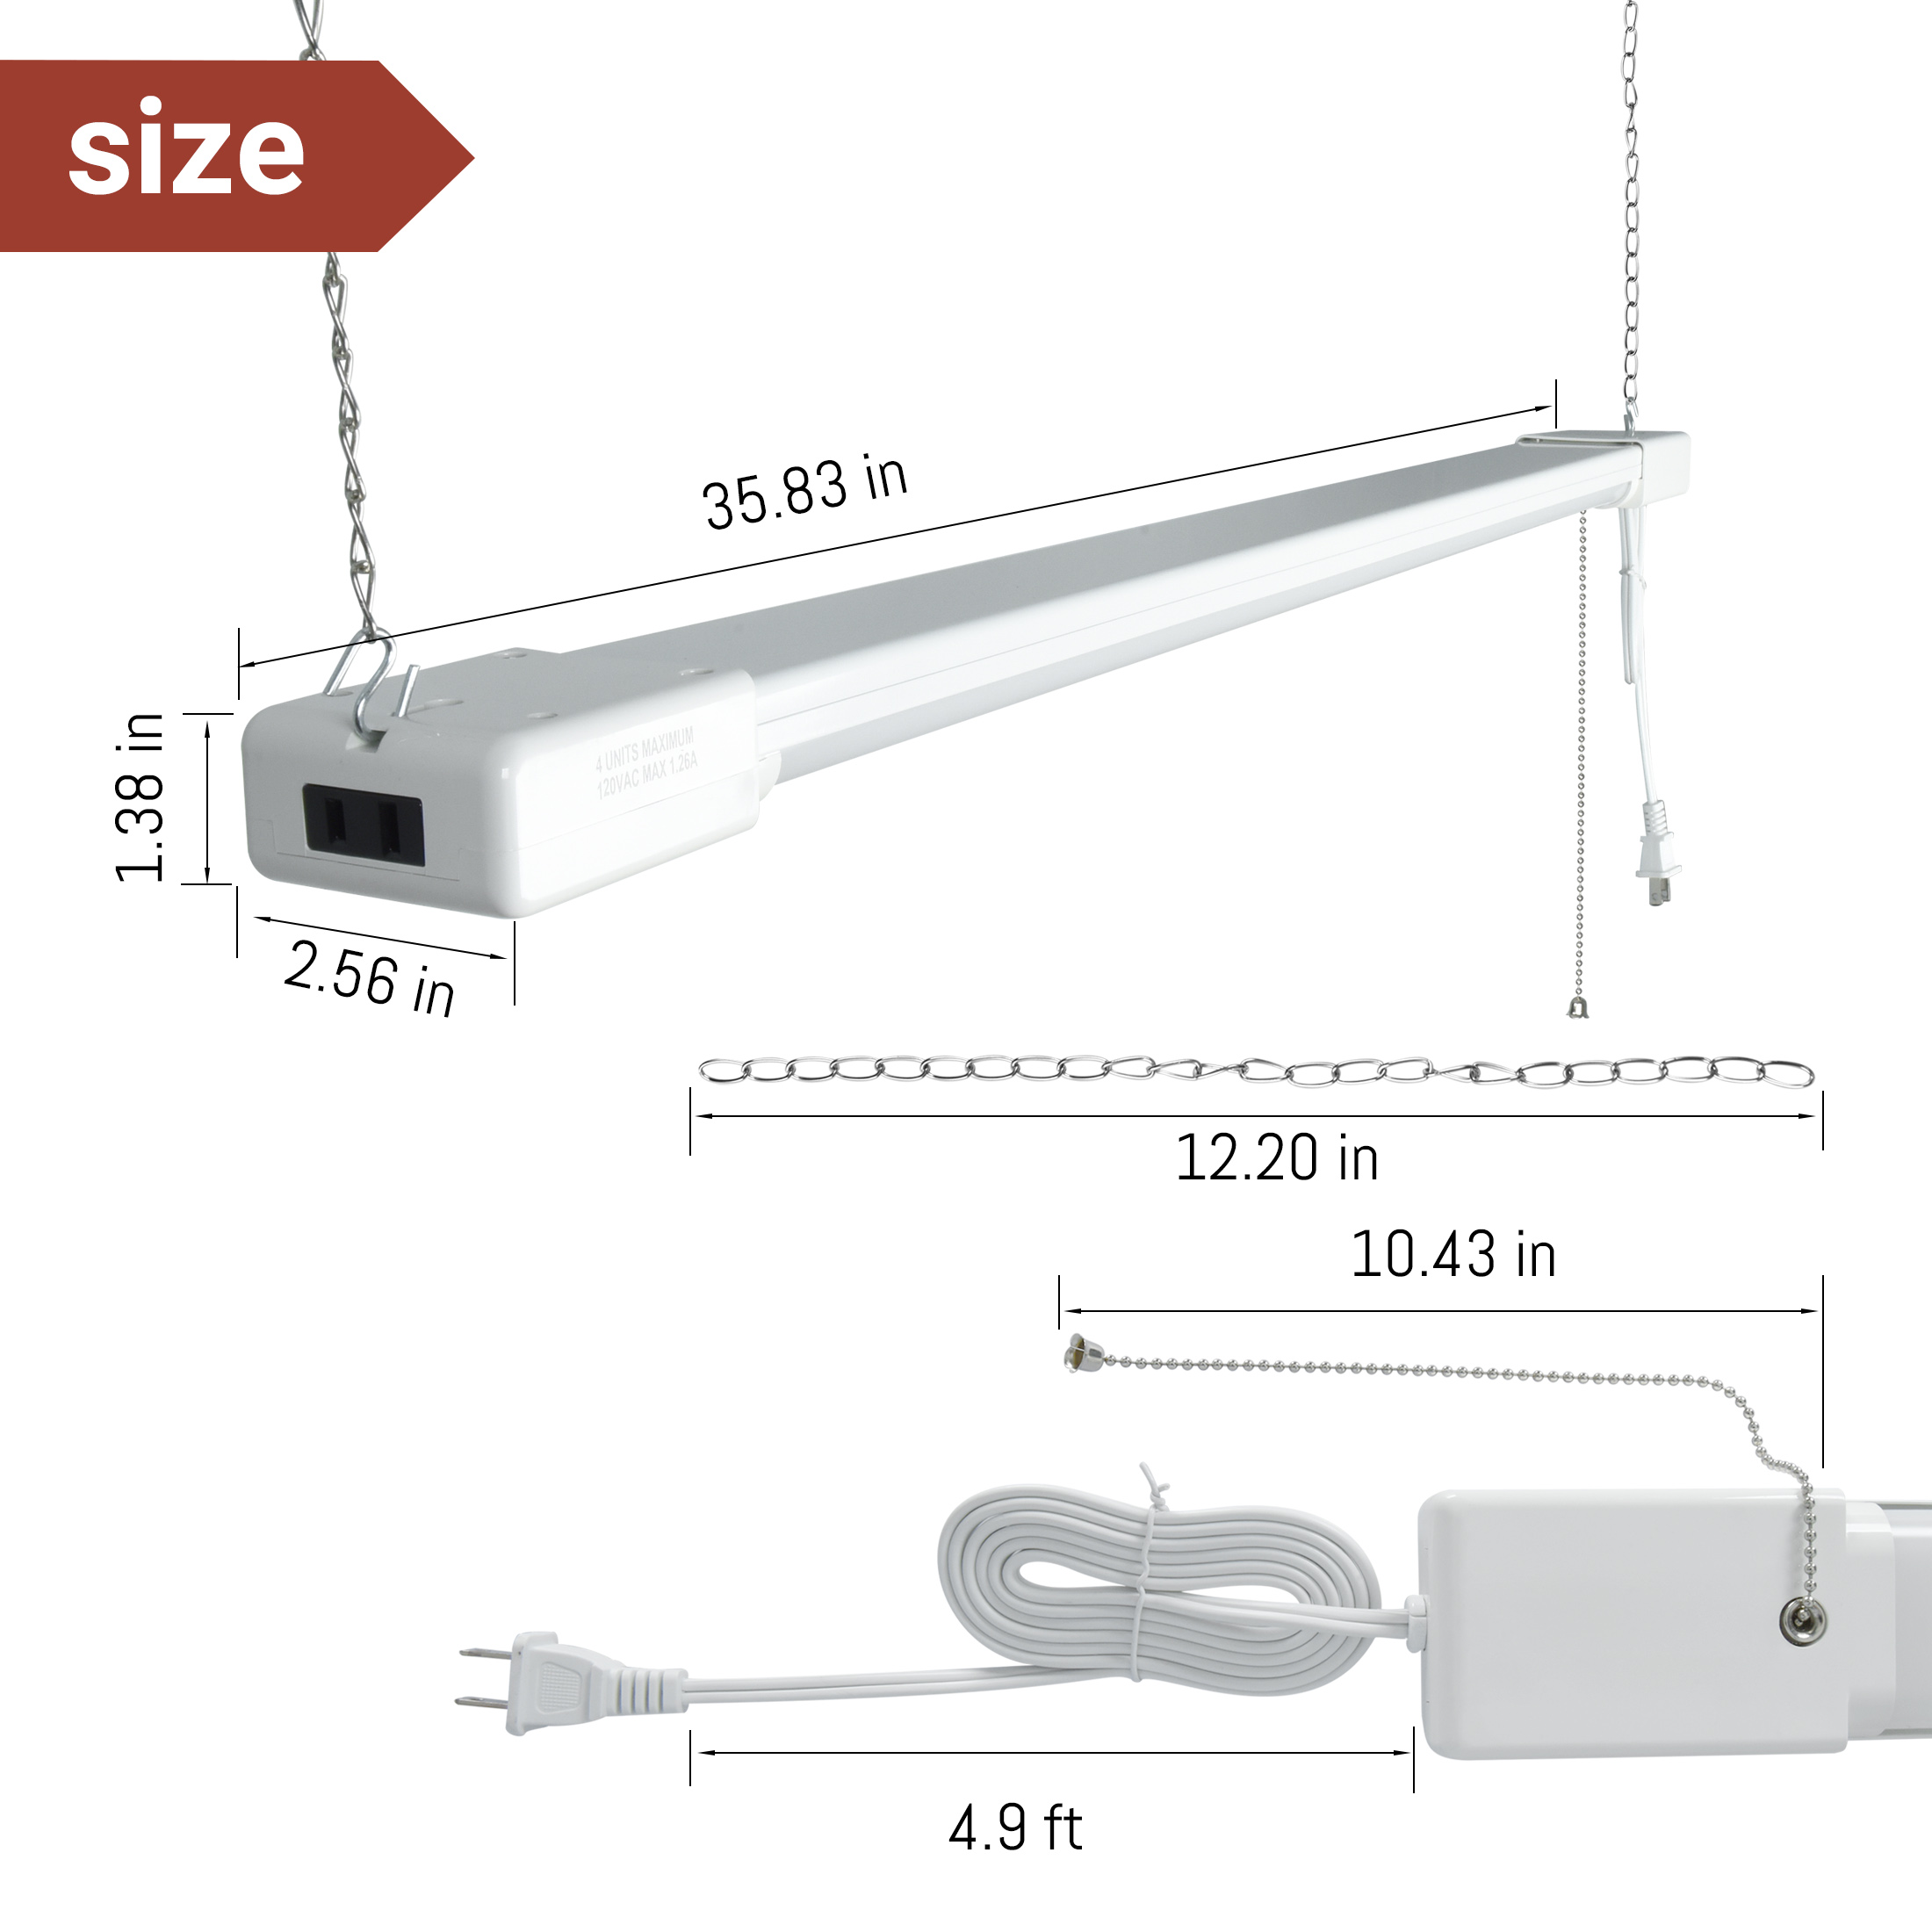 Hyper Tough 3-FT 4500-Lumen Integrated LED Shop Light, Slim Design, Linkable and Motion Sensor, 1PK - image 4 of 10